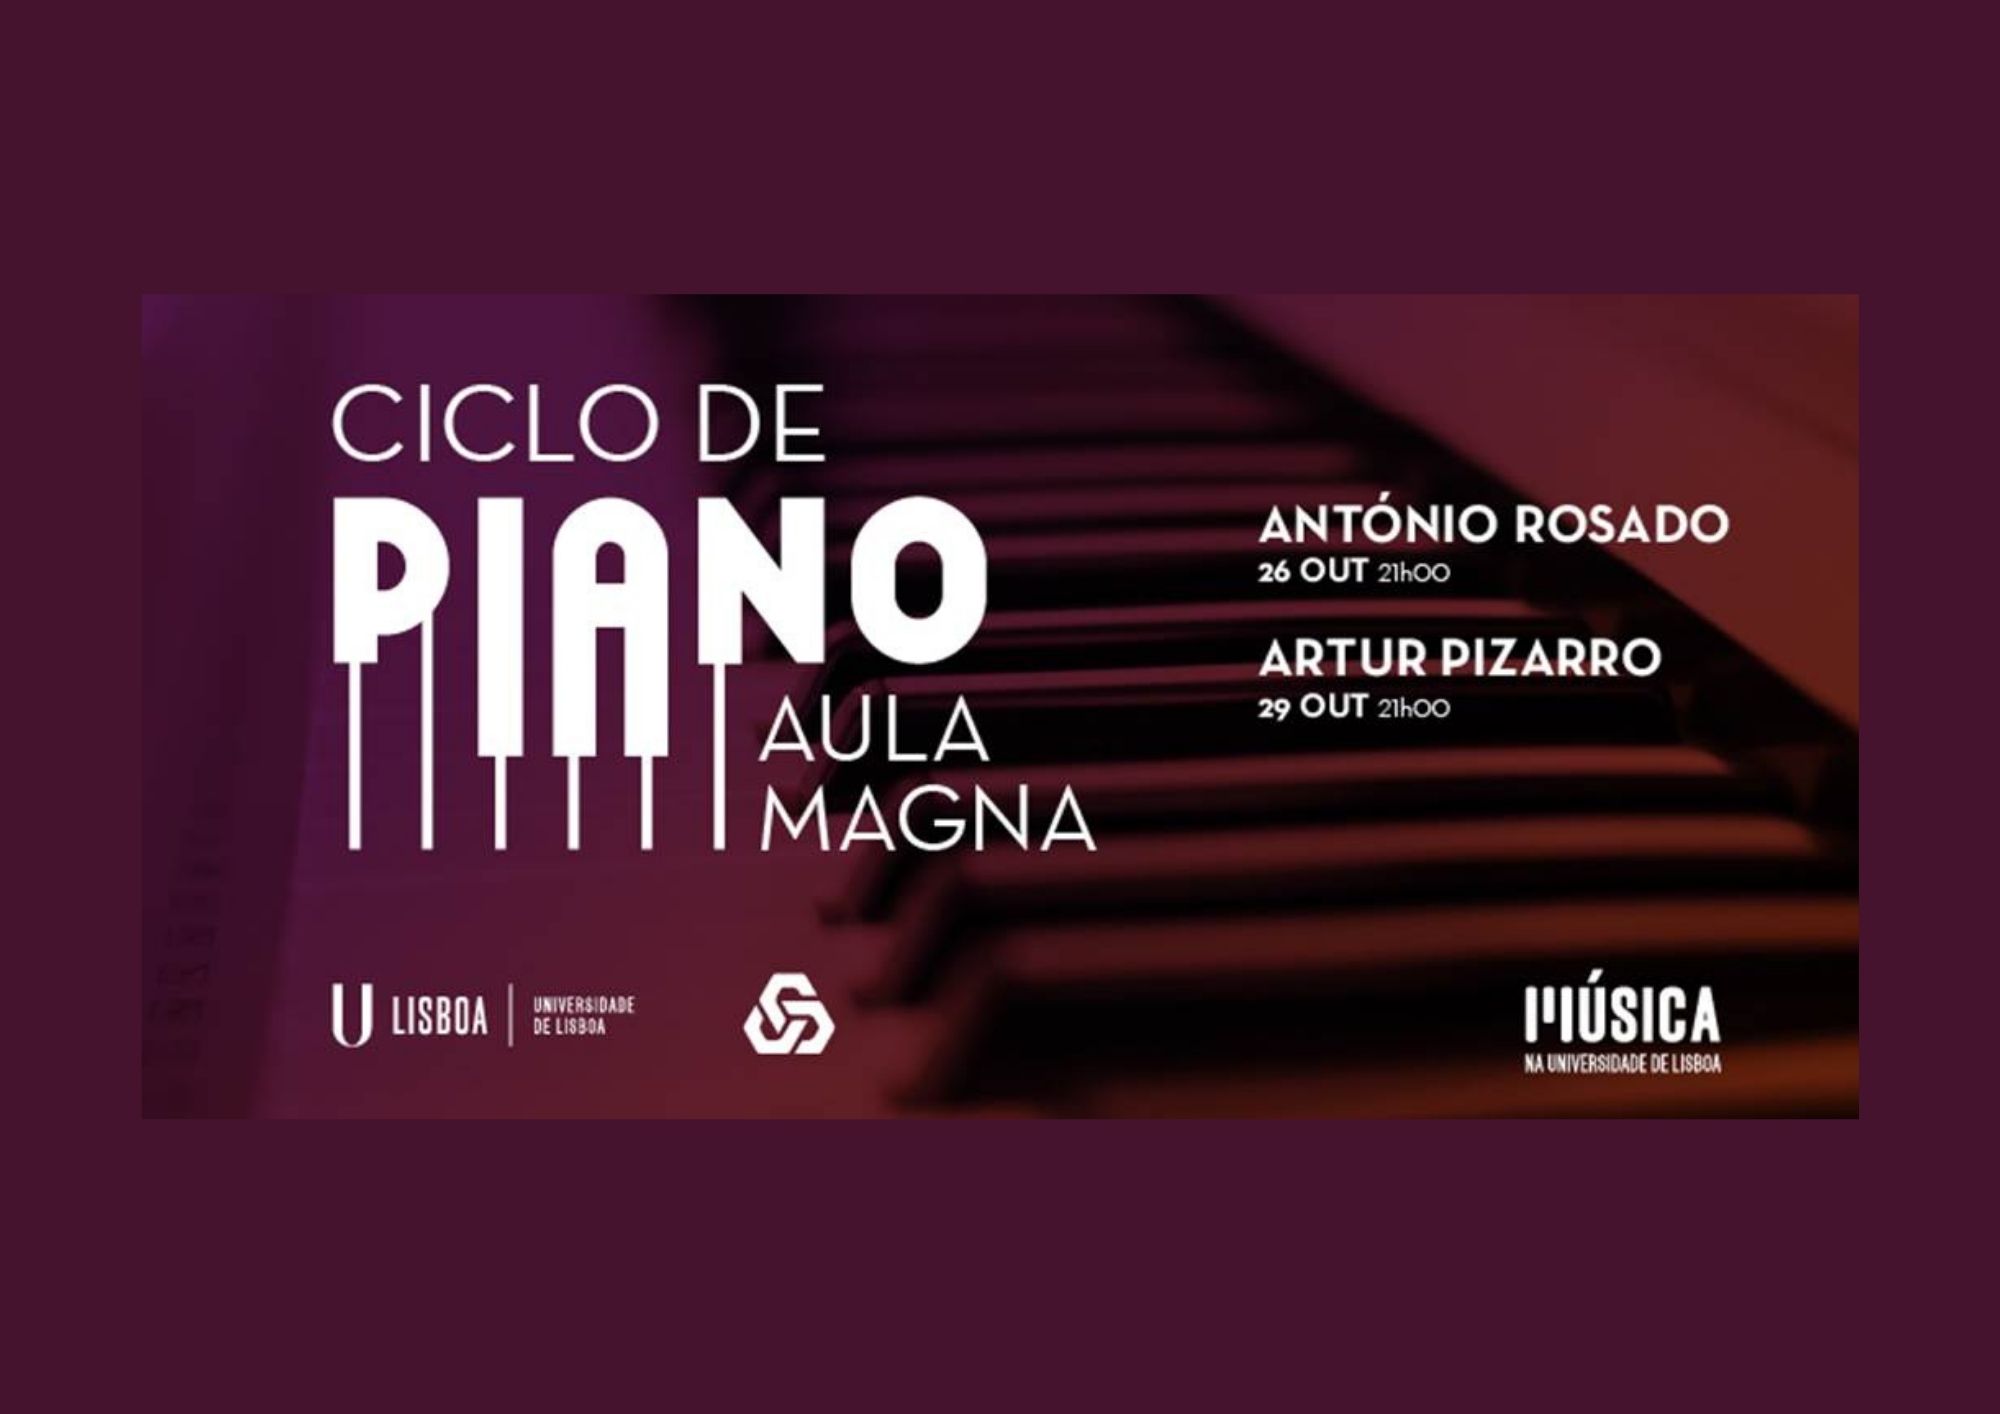  “Ciclo de Piano na Aula Magna”, dias 26 e 29 de outubro